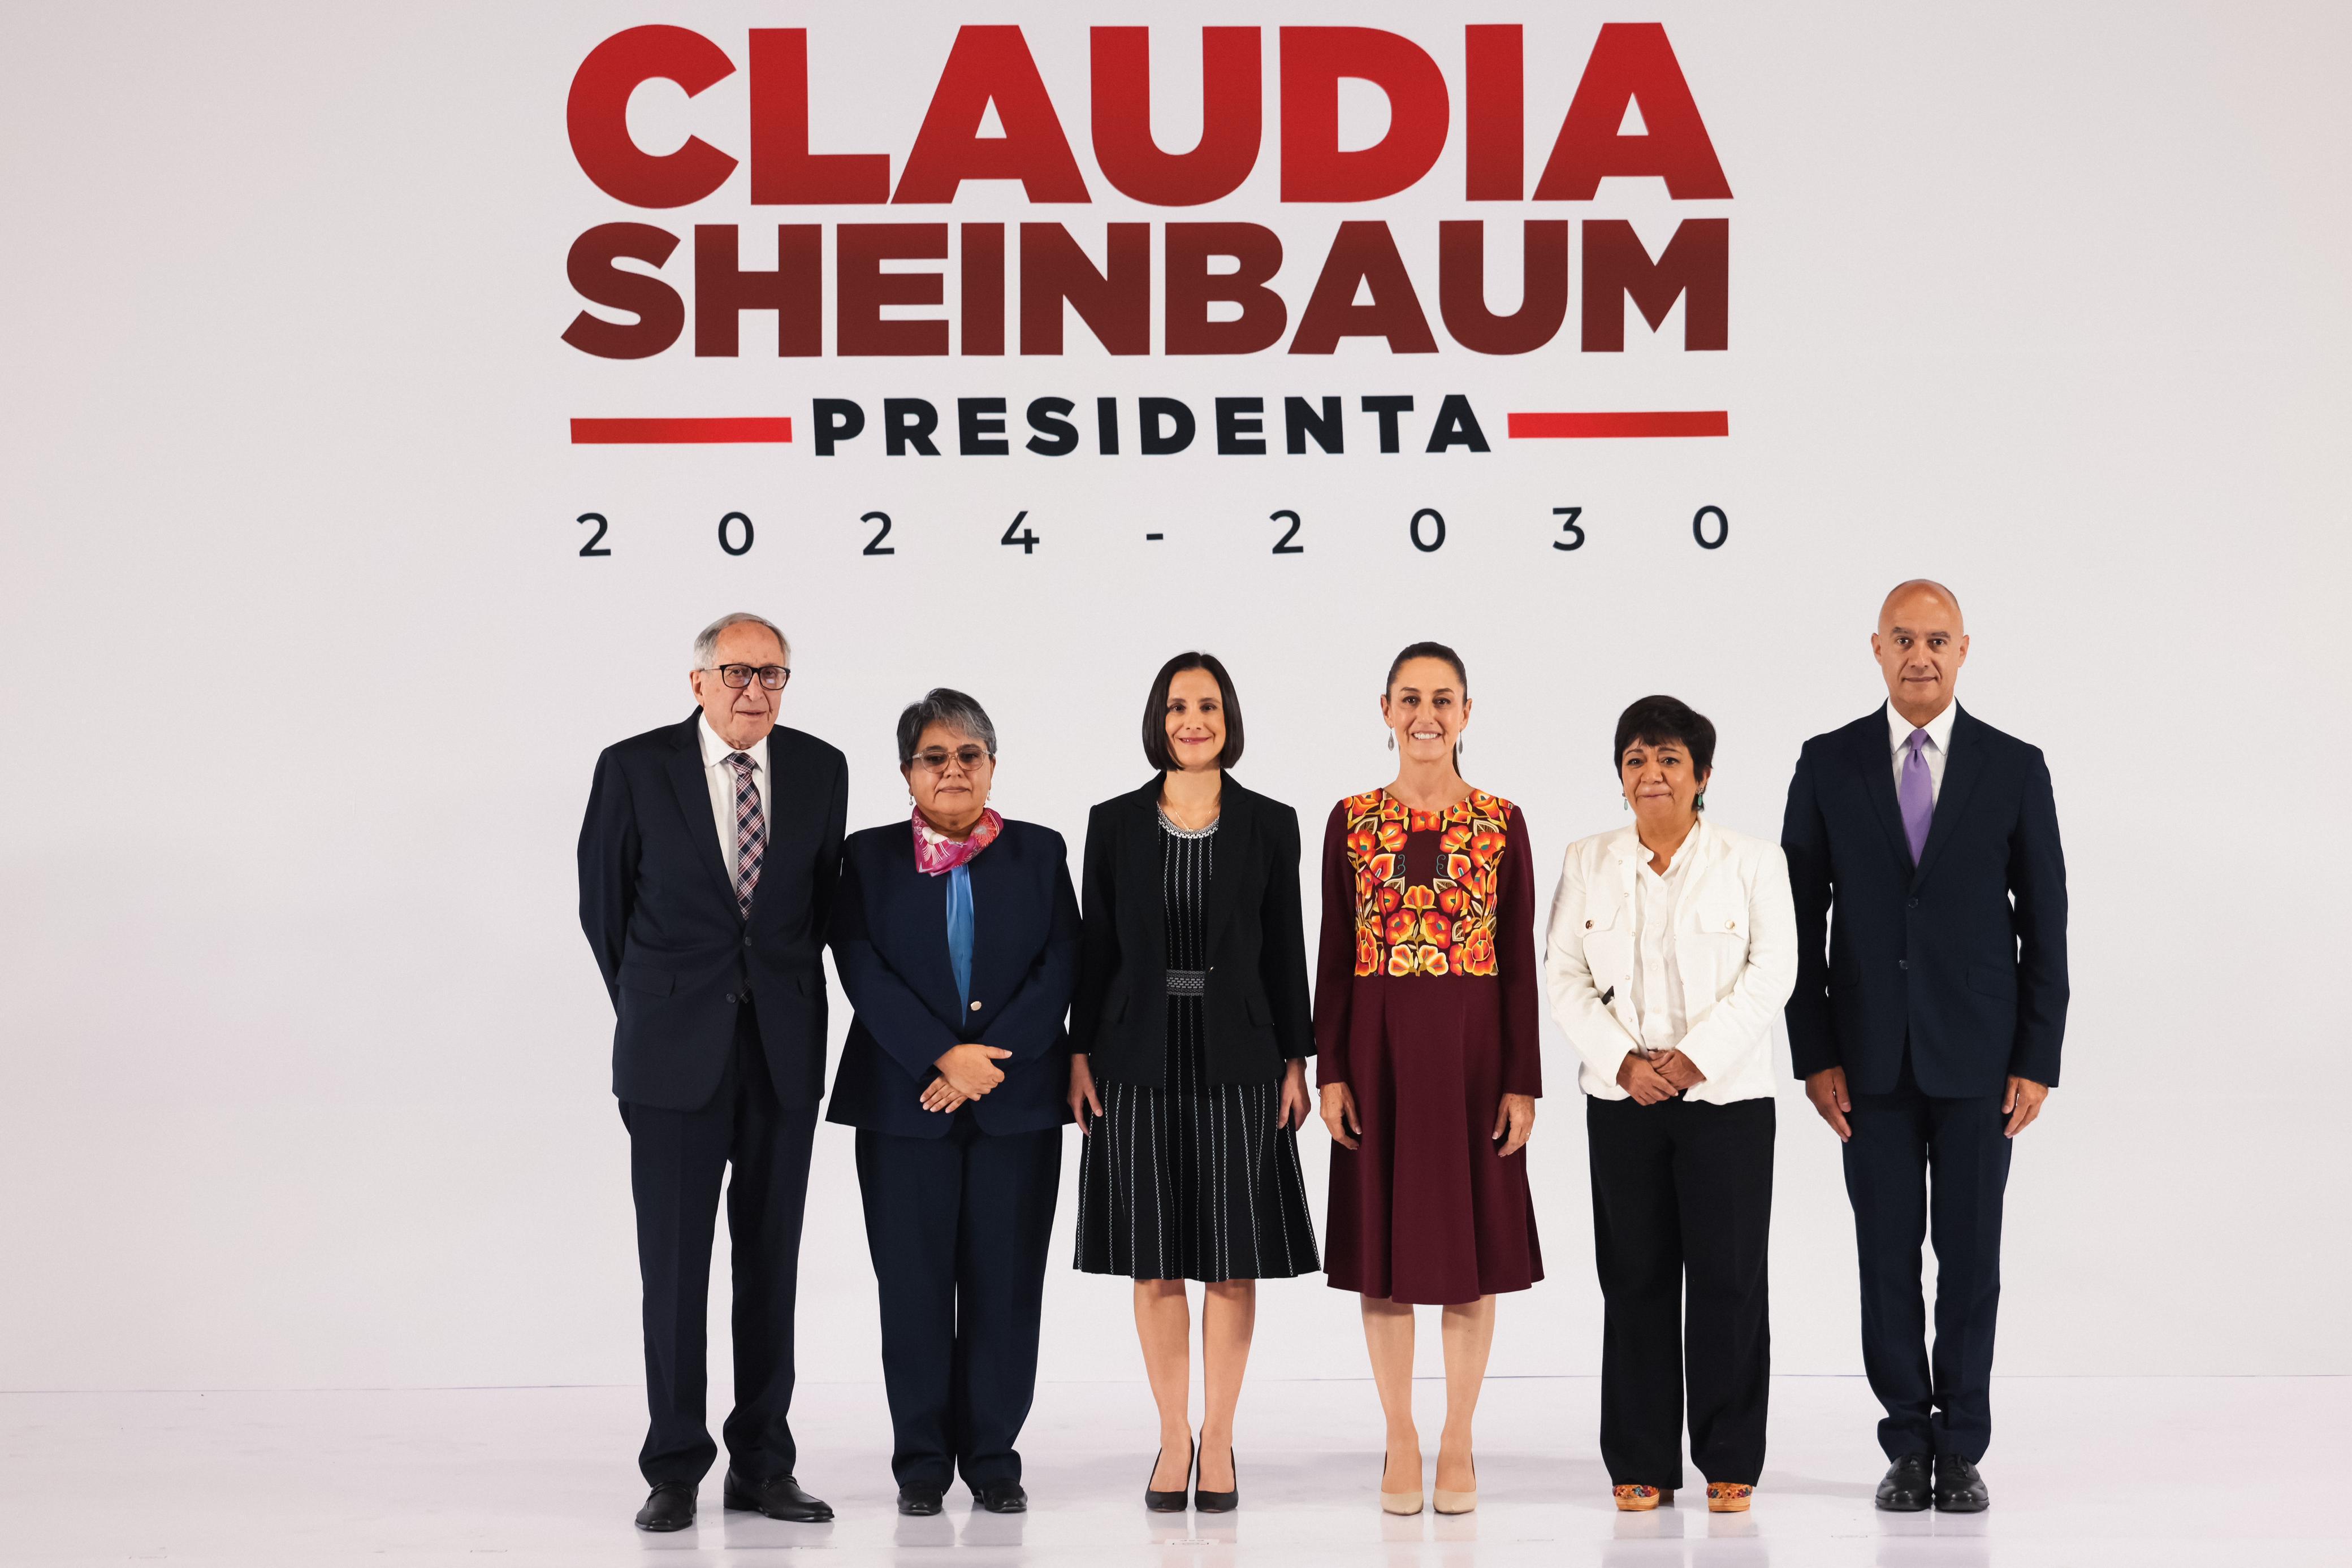 Presenta Claudia Sheinbaum a cinco miembros más de su Gabinete